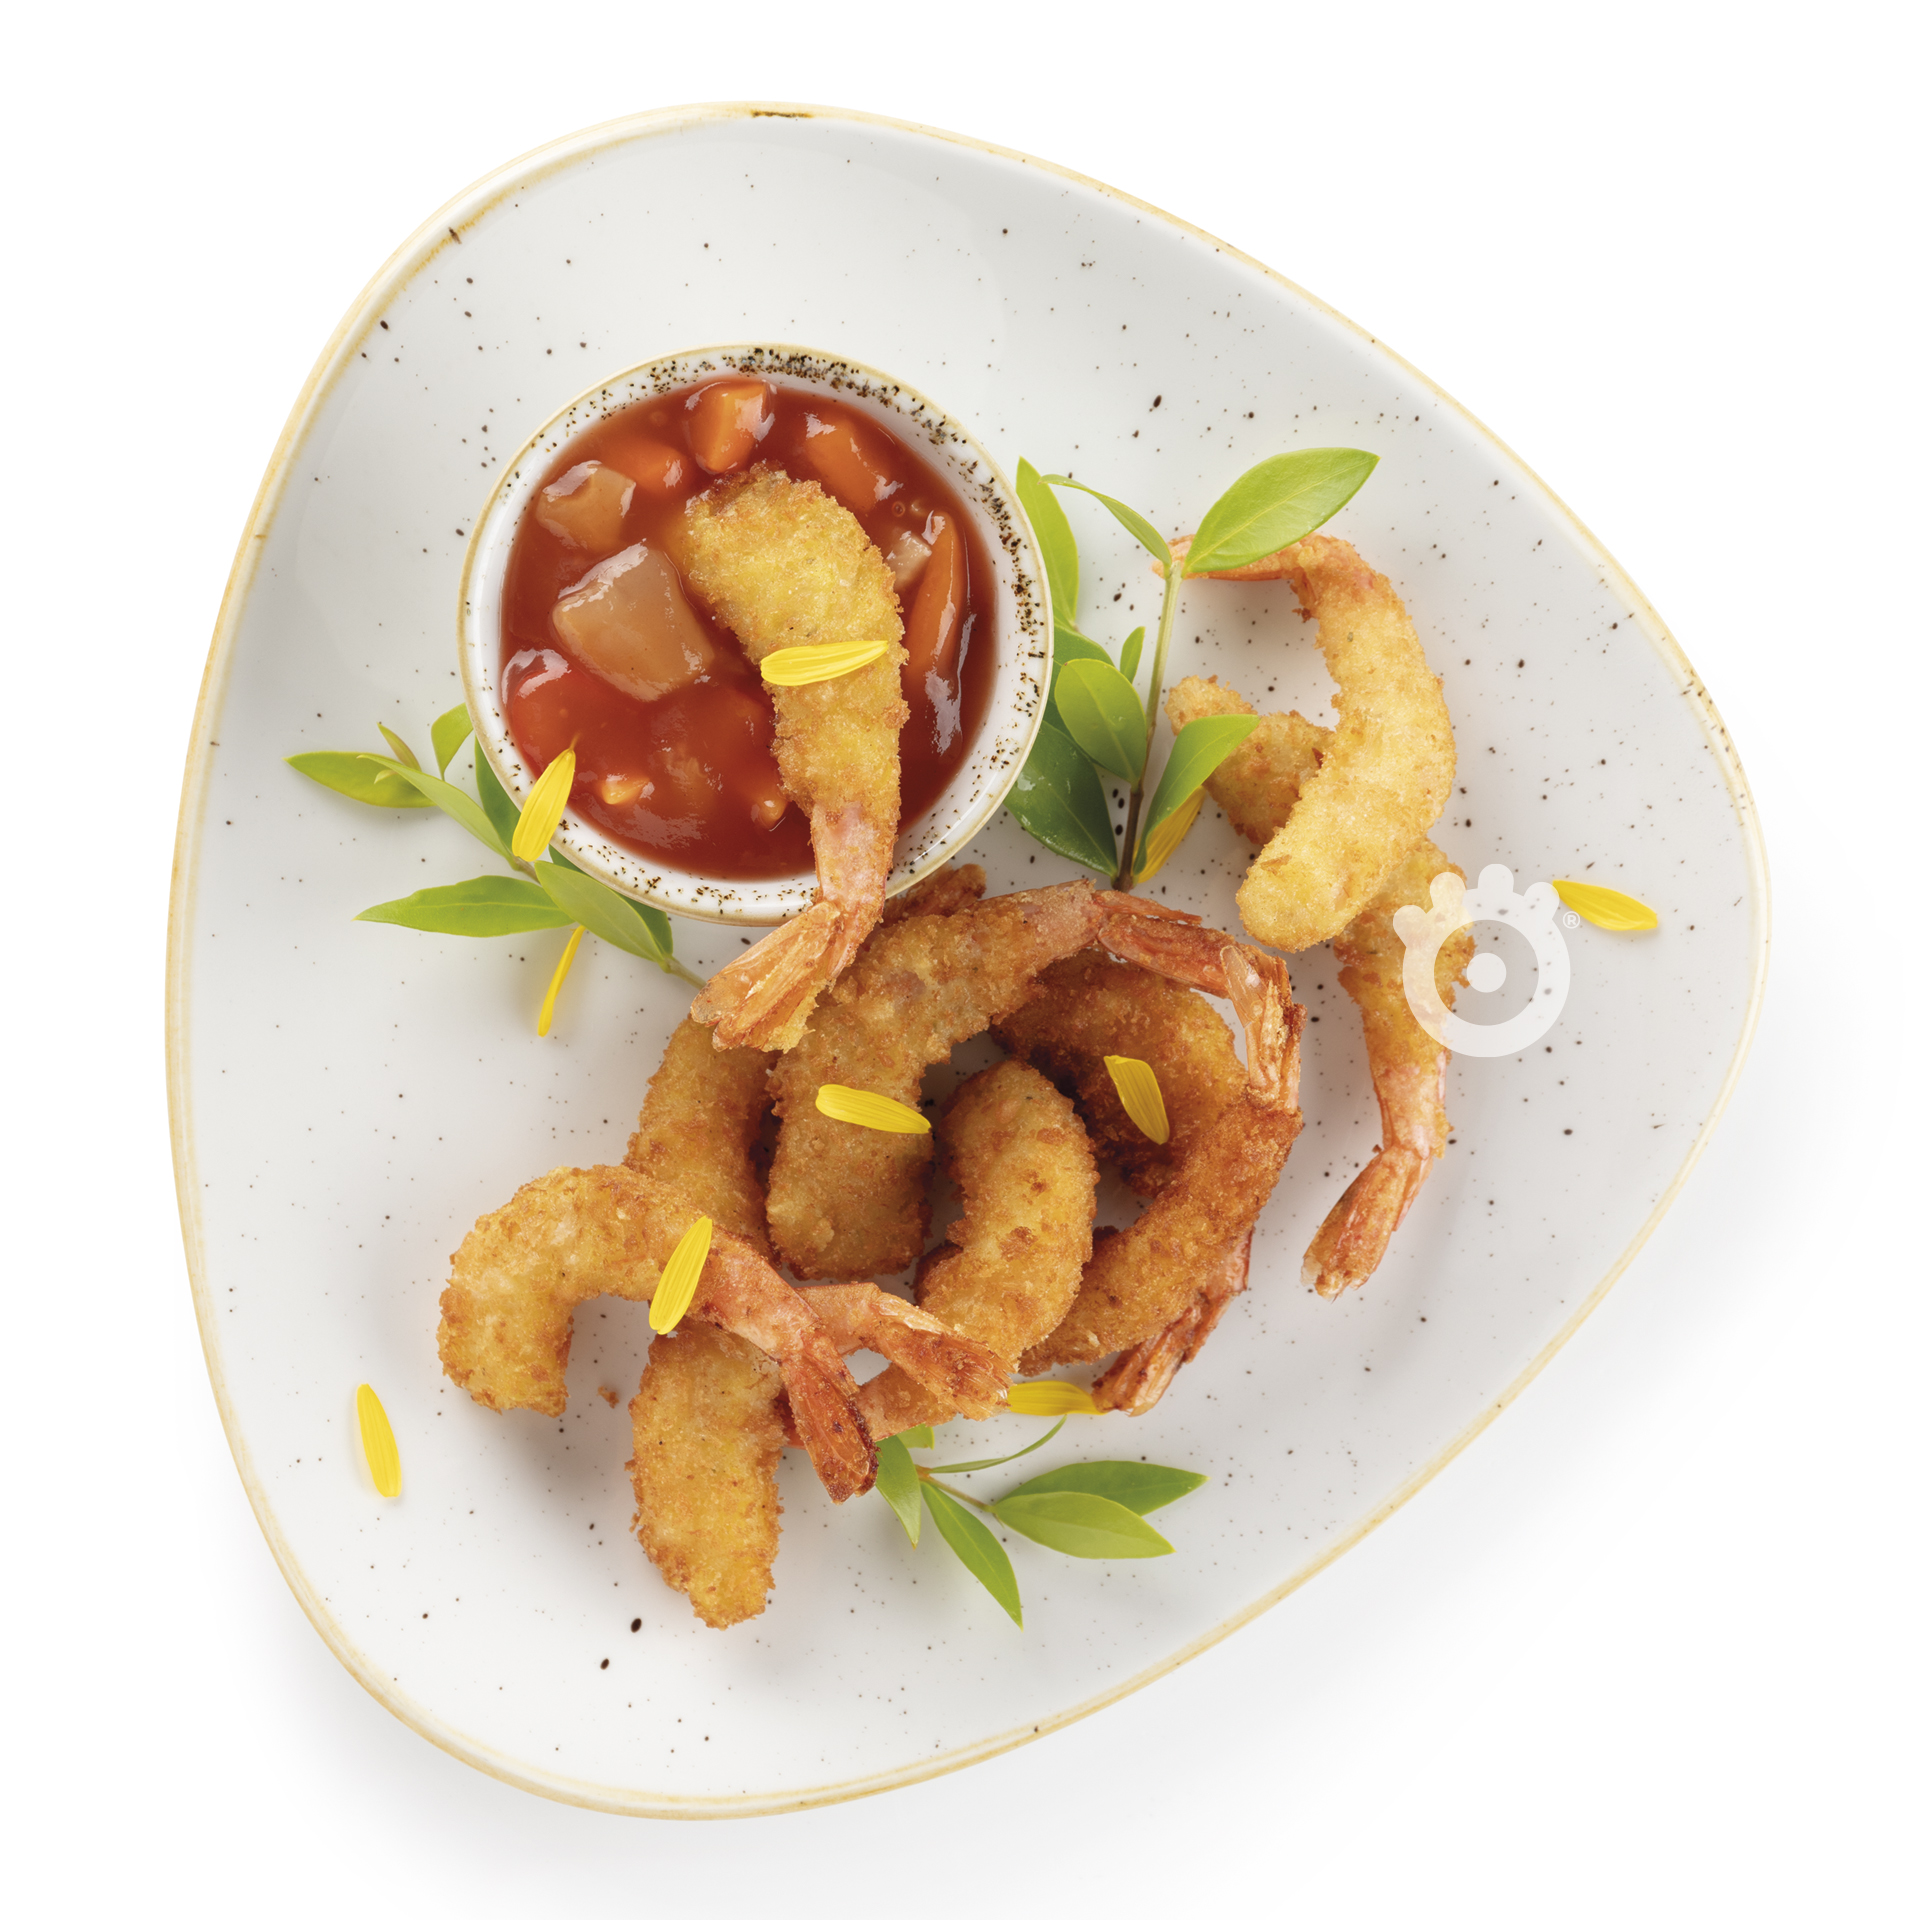 Gamberi fritti con salsa piccante - Food photography